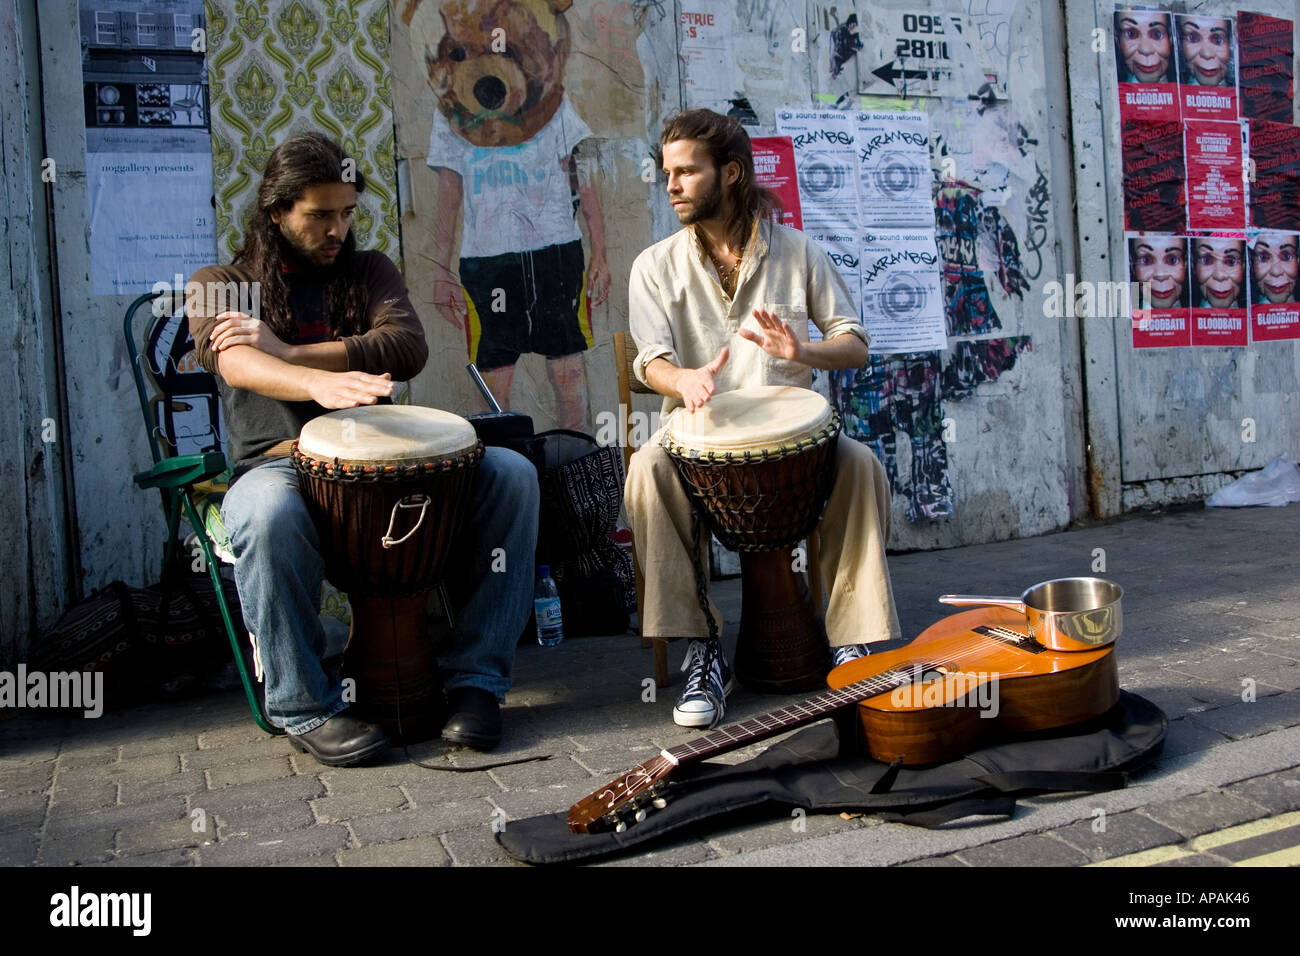 Street musicians playing drums 'Brick Lane' London, UK. Stock Photo